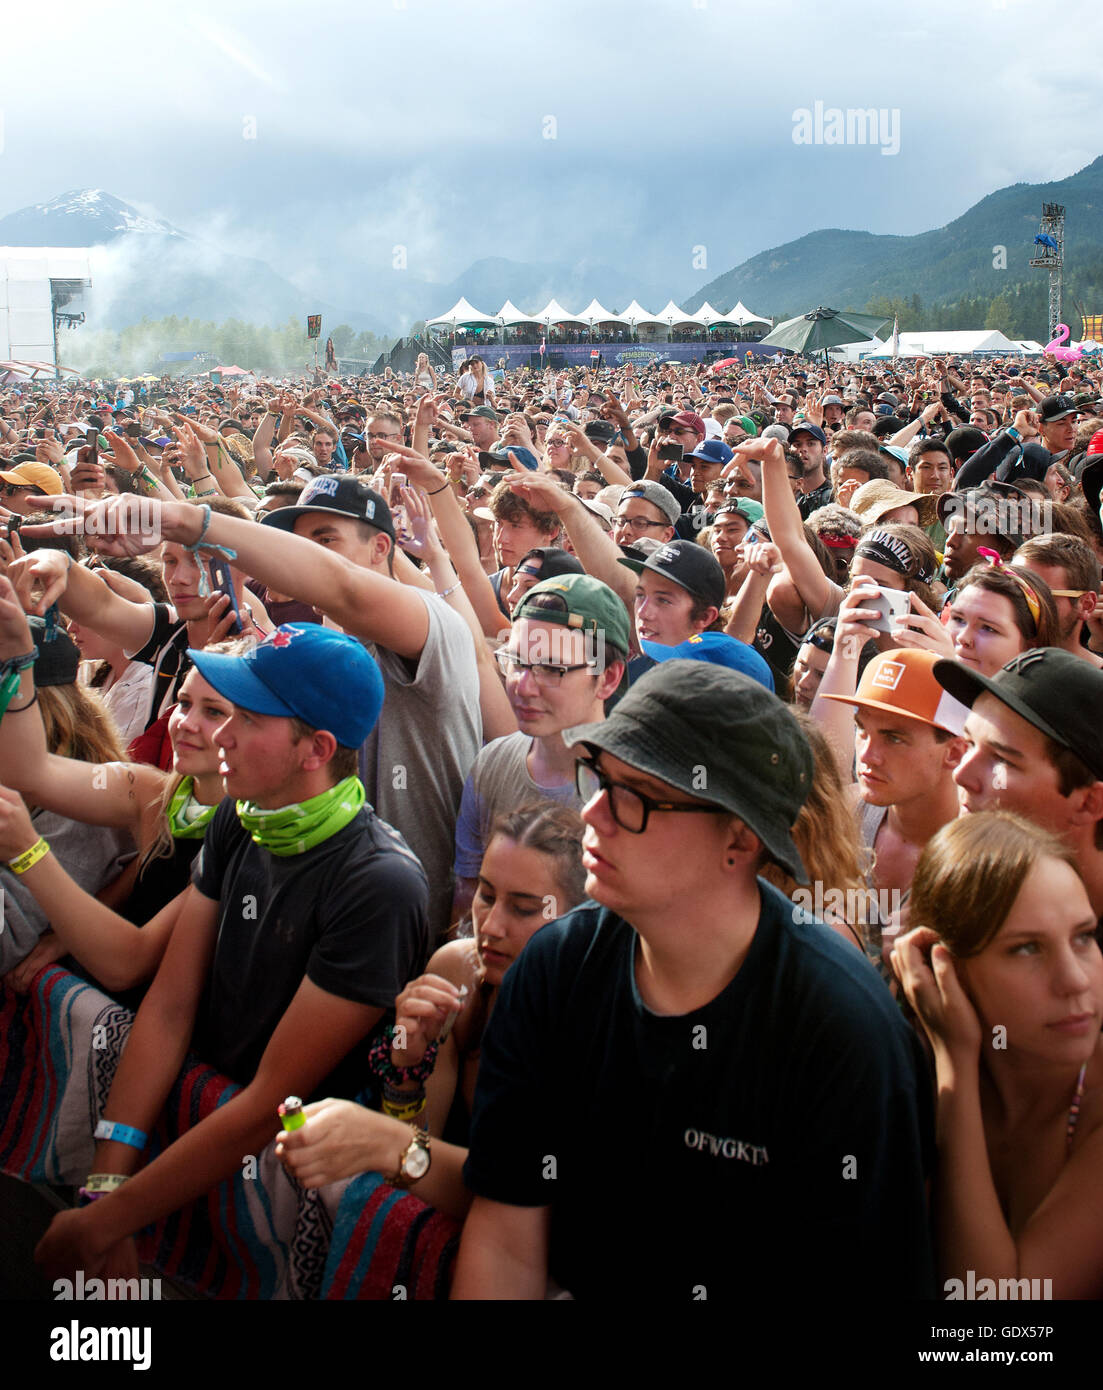 Des foules immenses les concerts rock en plein air. Fans cheer dans la pluie au Festival de musique de Pemberton. Pemberton, BC Canada Banque D'Images